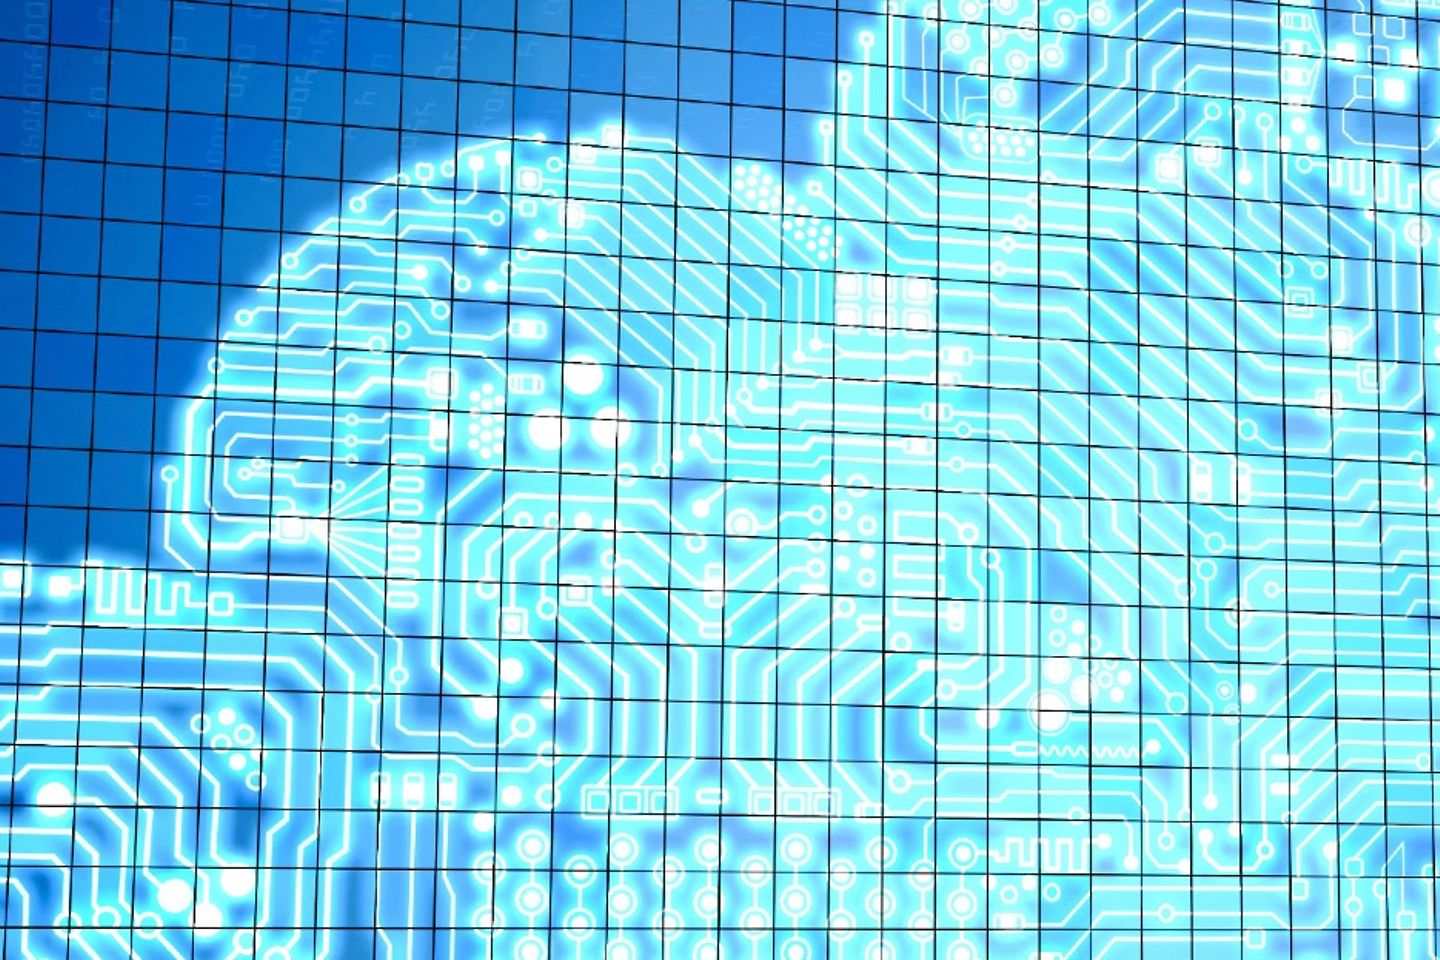 Virtuelle Darstellung einer Cloud, umgeben von binären Codes.